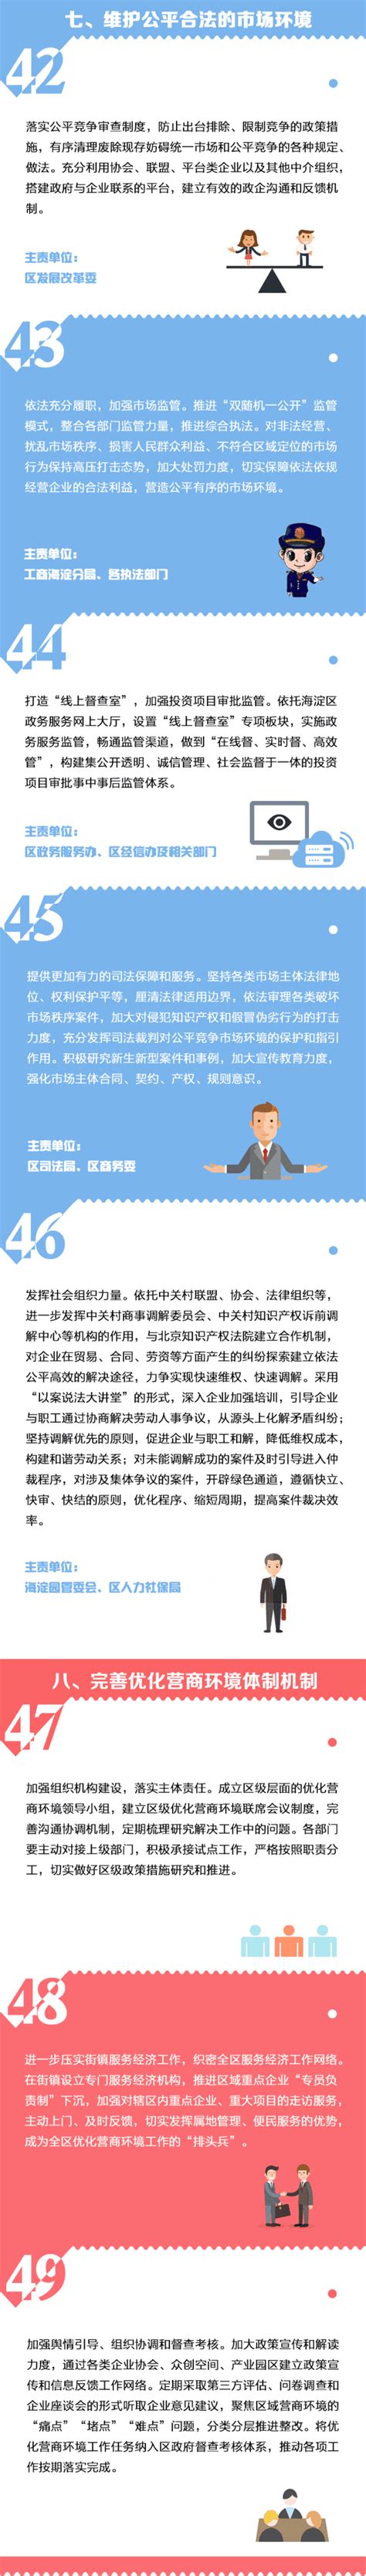 北京海淀区金融企业LOGO设计案例整理分享_空灵LOGO设计公司